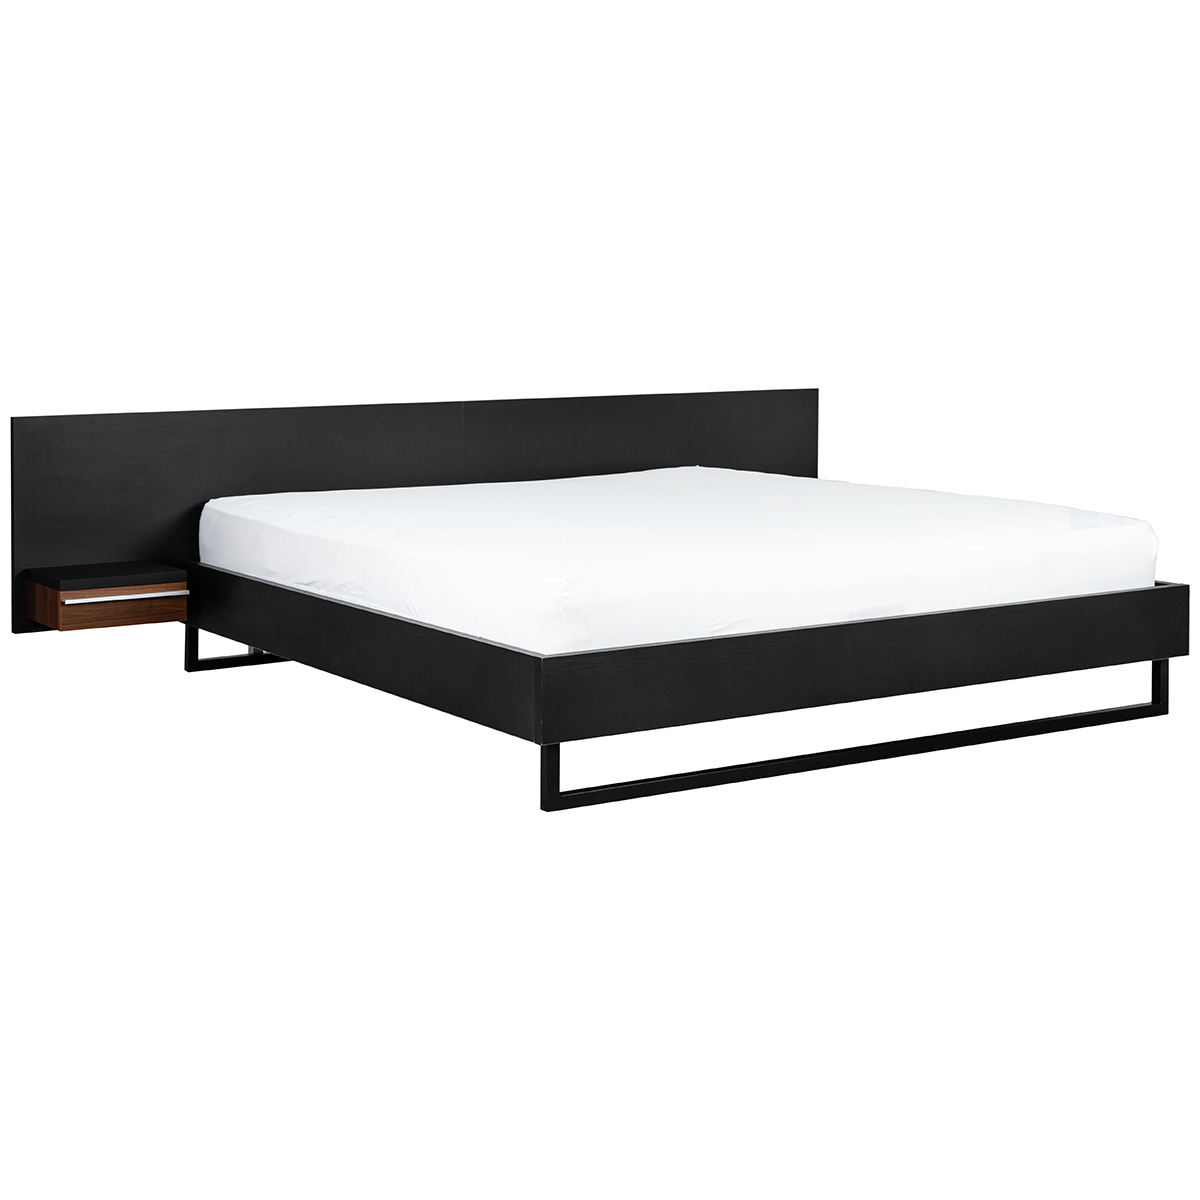 BS 1630 109 4 – Triplo Bed Wnight Table & Slats 180×200 Black & Walnut (2)